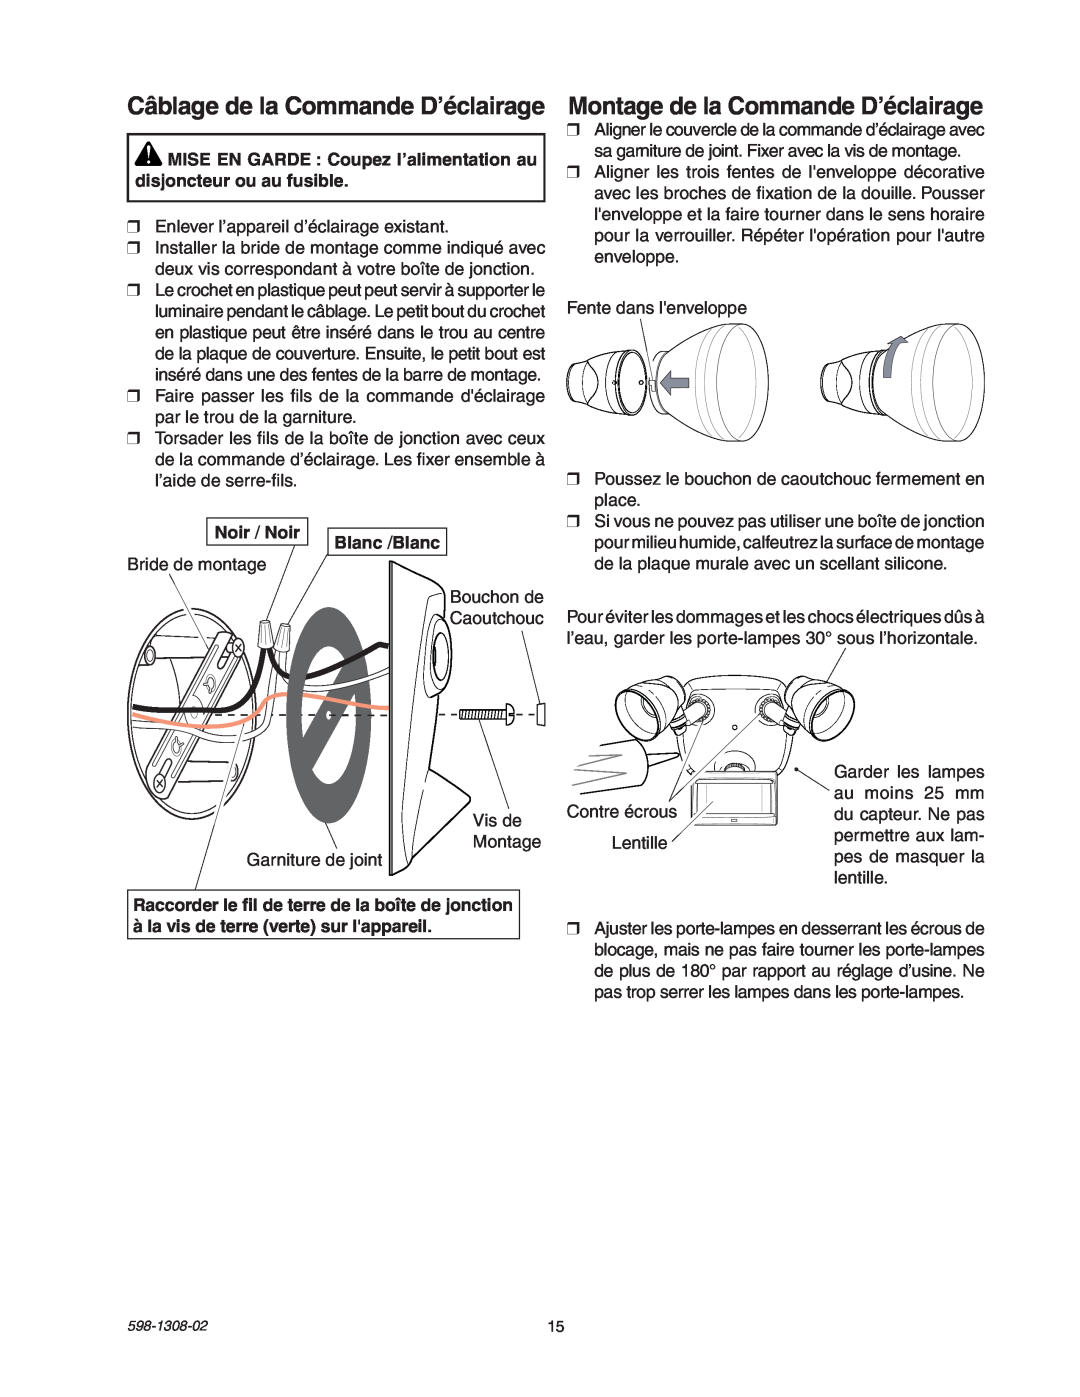 Heath Zenith 5718 manual Montage de la Commande D’éclairage, Câblage de la Commande D’éclairage, Noir / Noir, Blanc /Blanc 